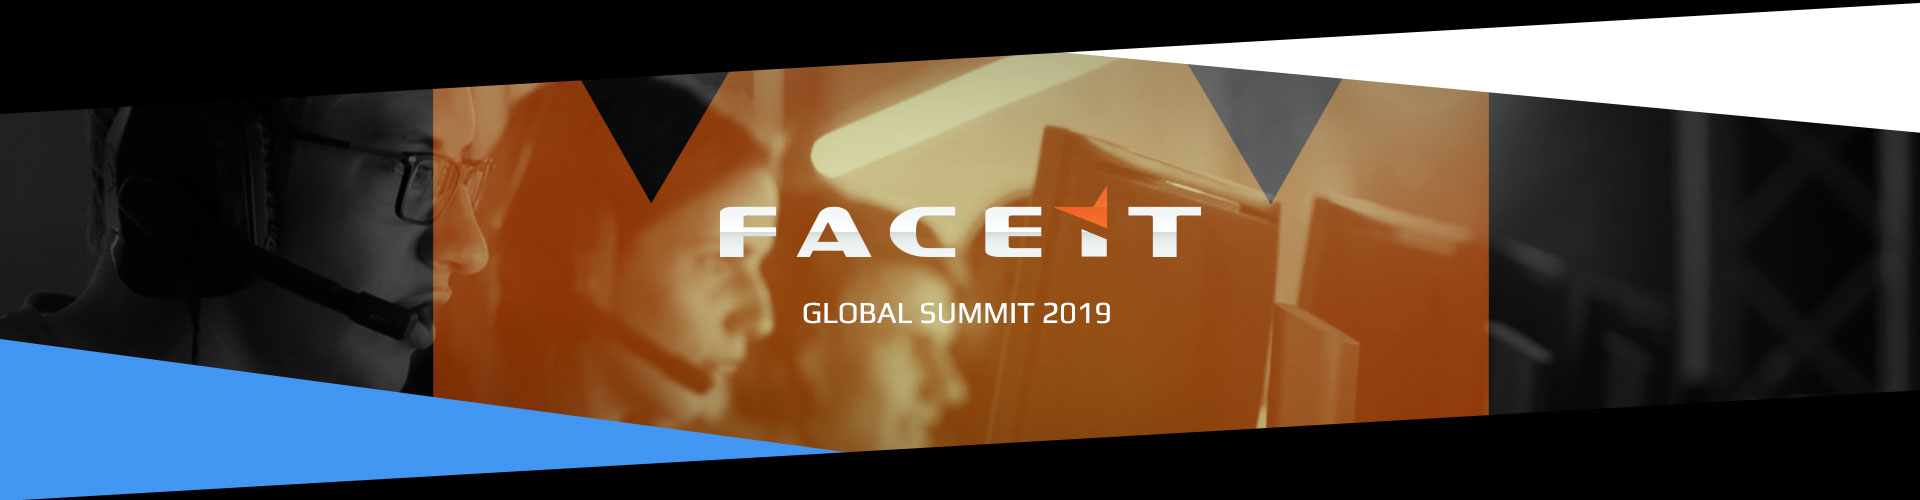 Faceit Global Summit 3. päivä